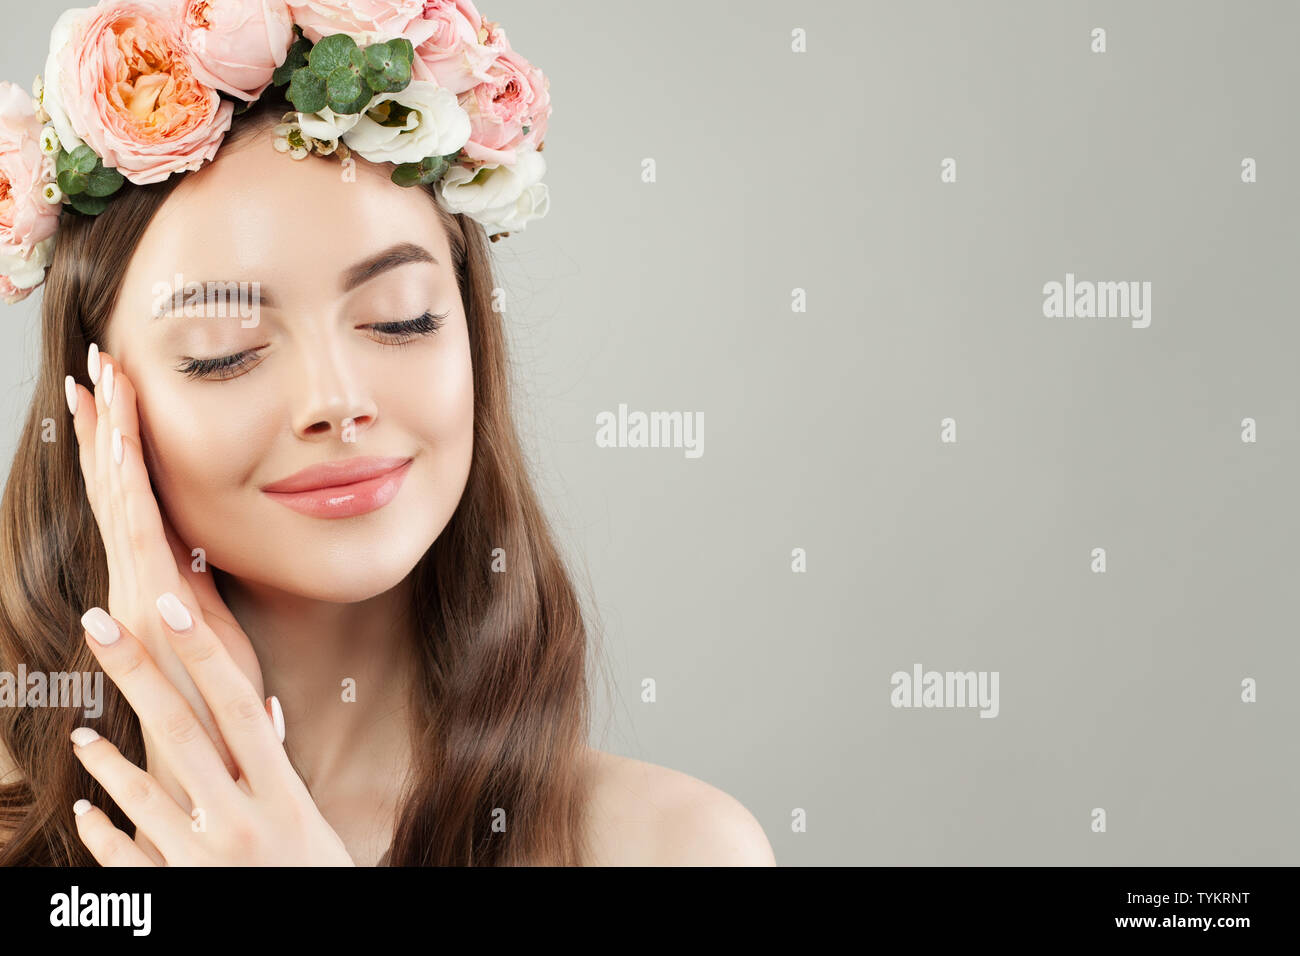 Ritratto di donna bella con pelle chiara, lunghi capelli luminosi e fiori Foto Stock